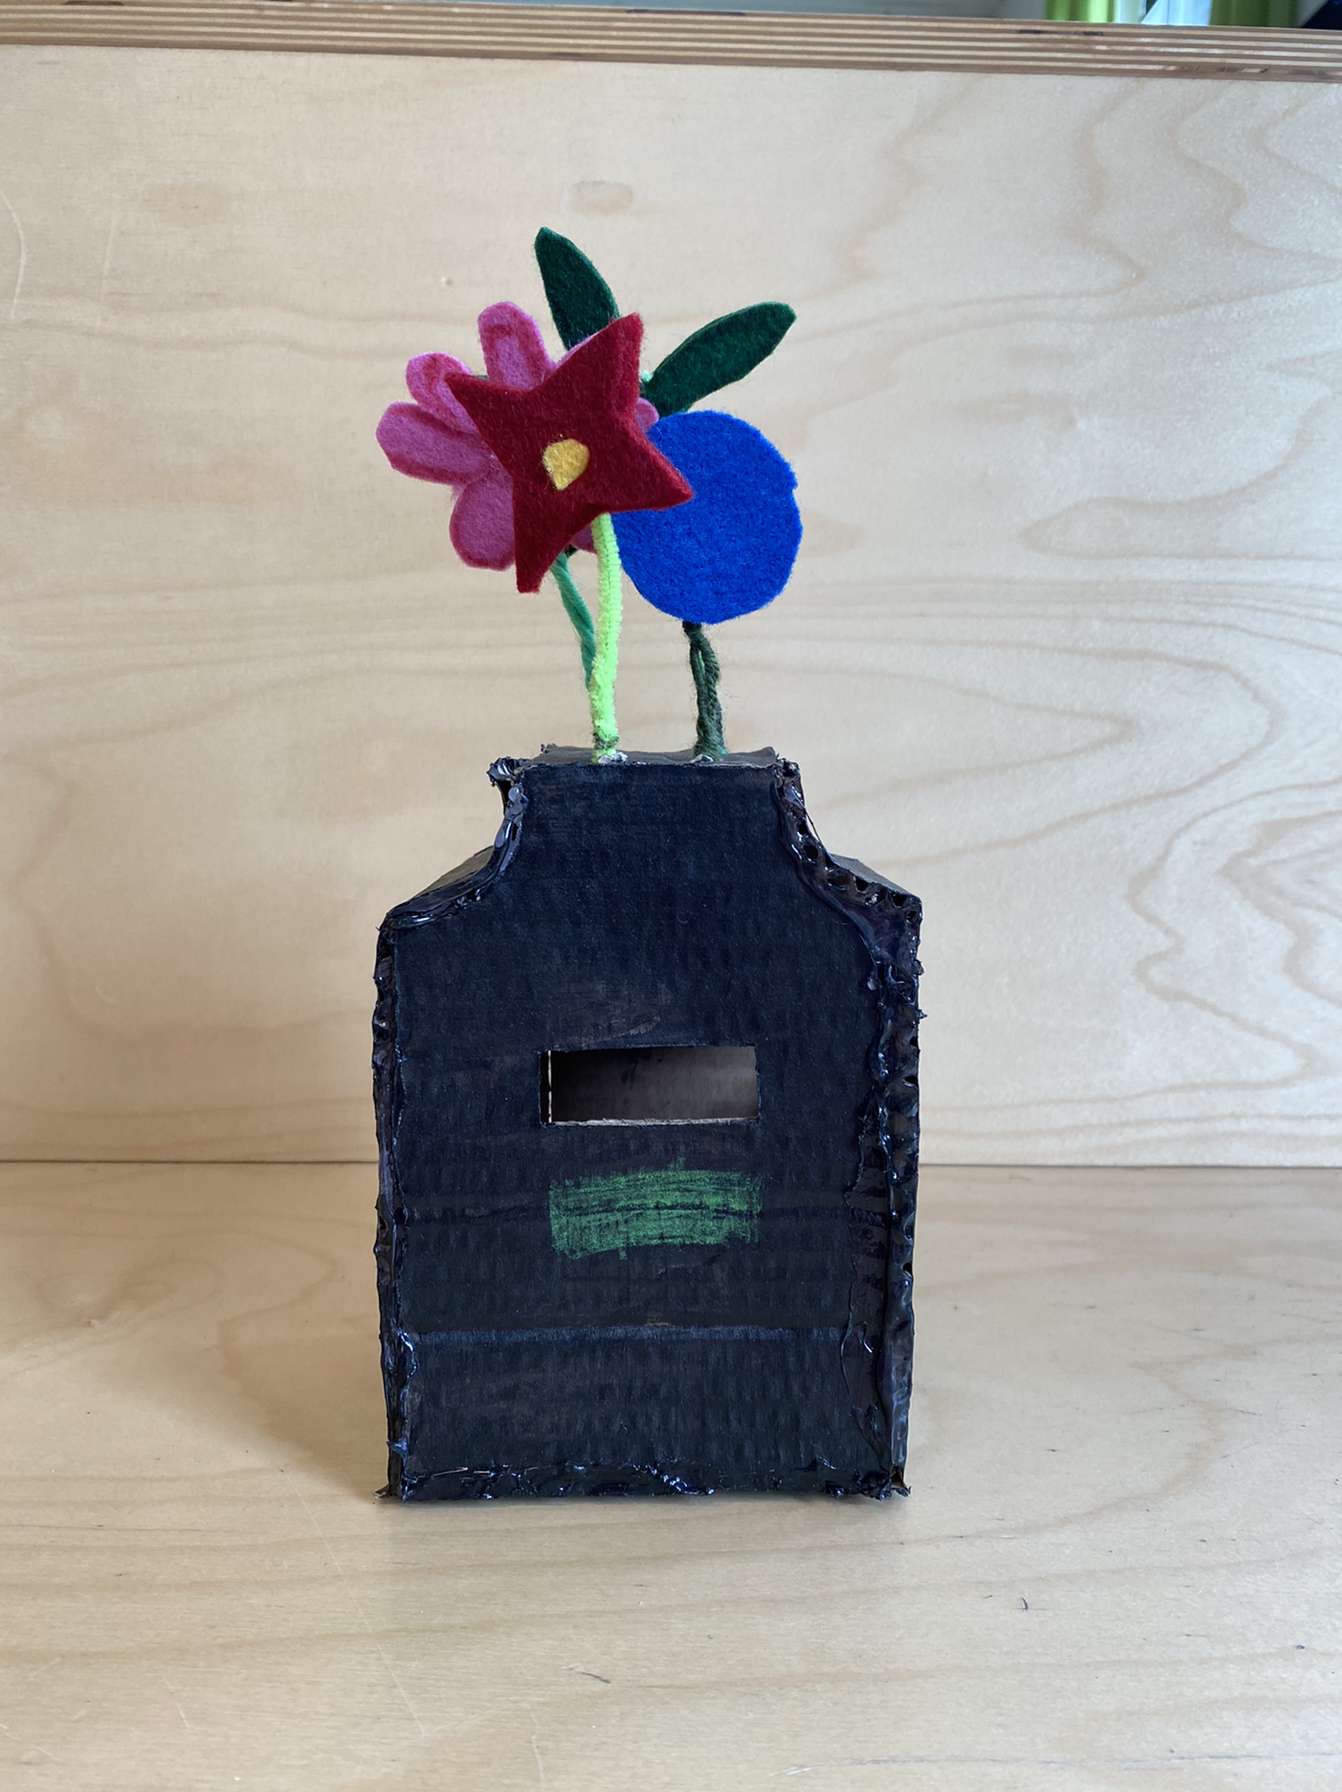 Elev har skabt en mockup af pap- en skraldespand, hvor der vokser blomster på toppen